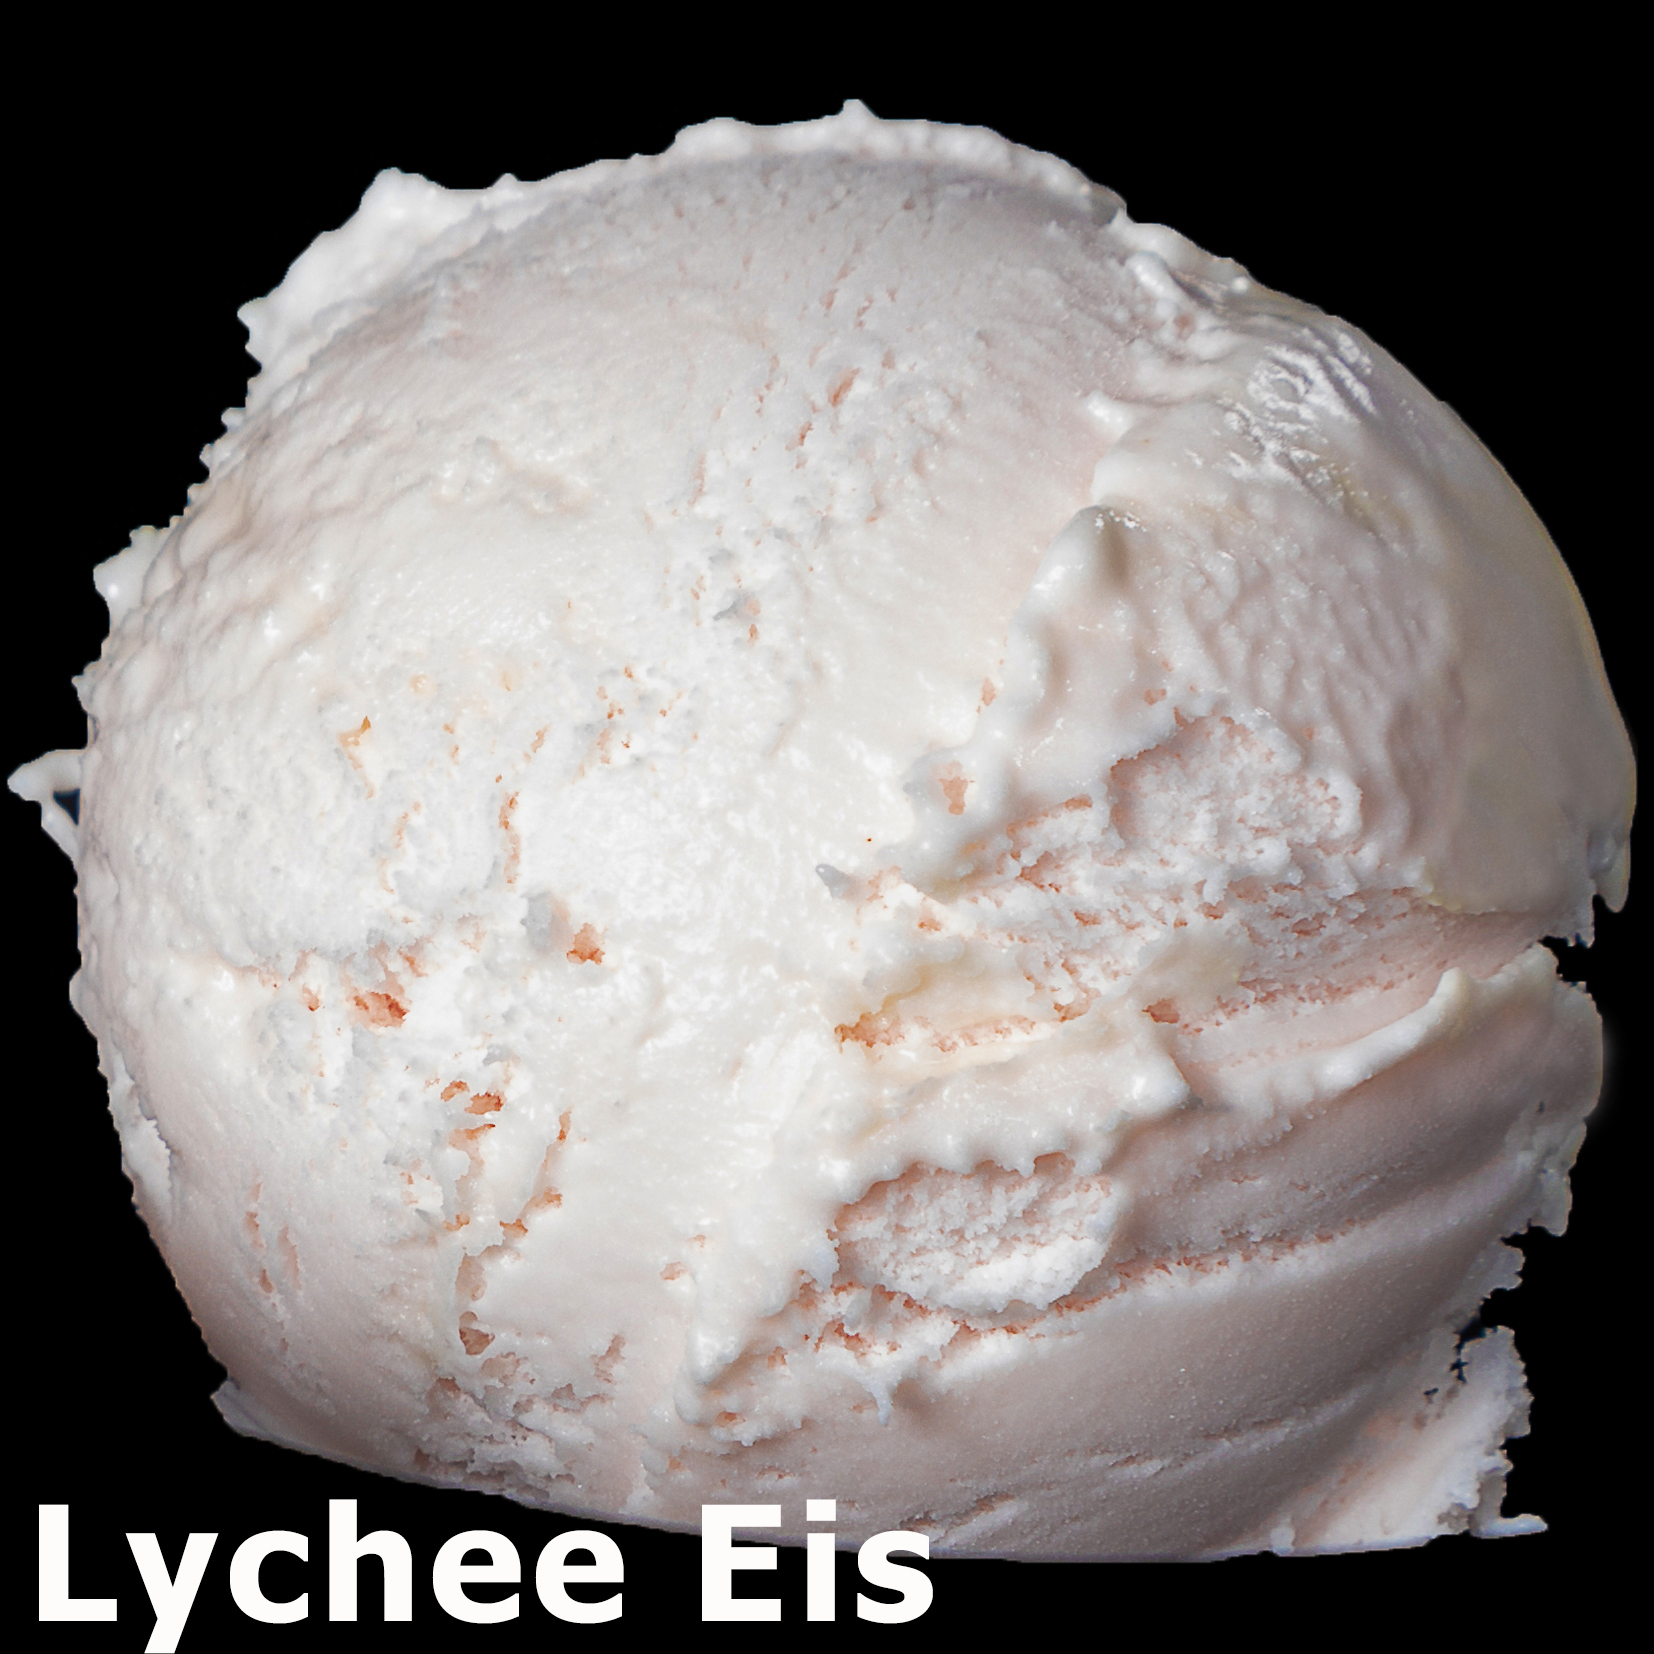 156. Lychee Eis